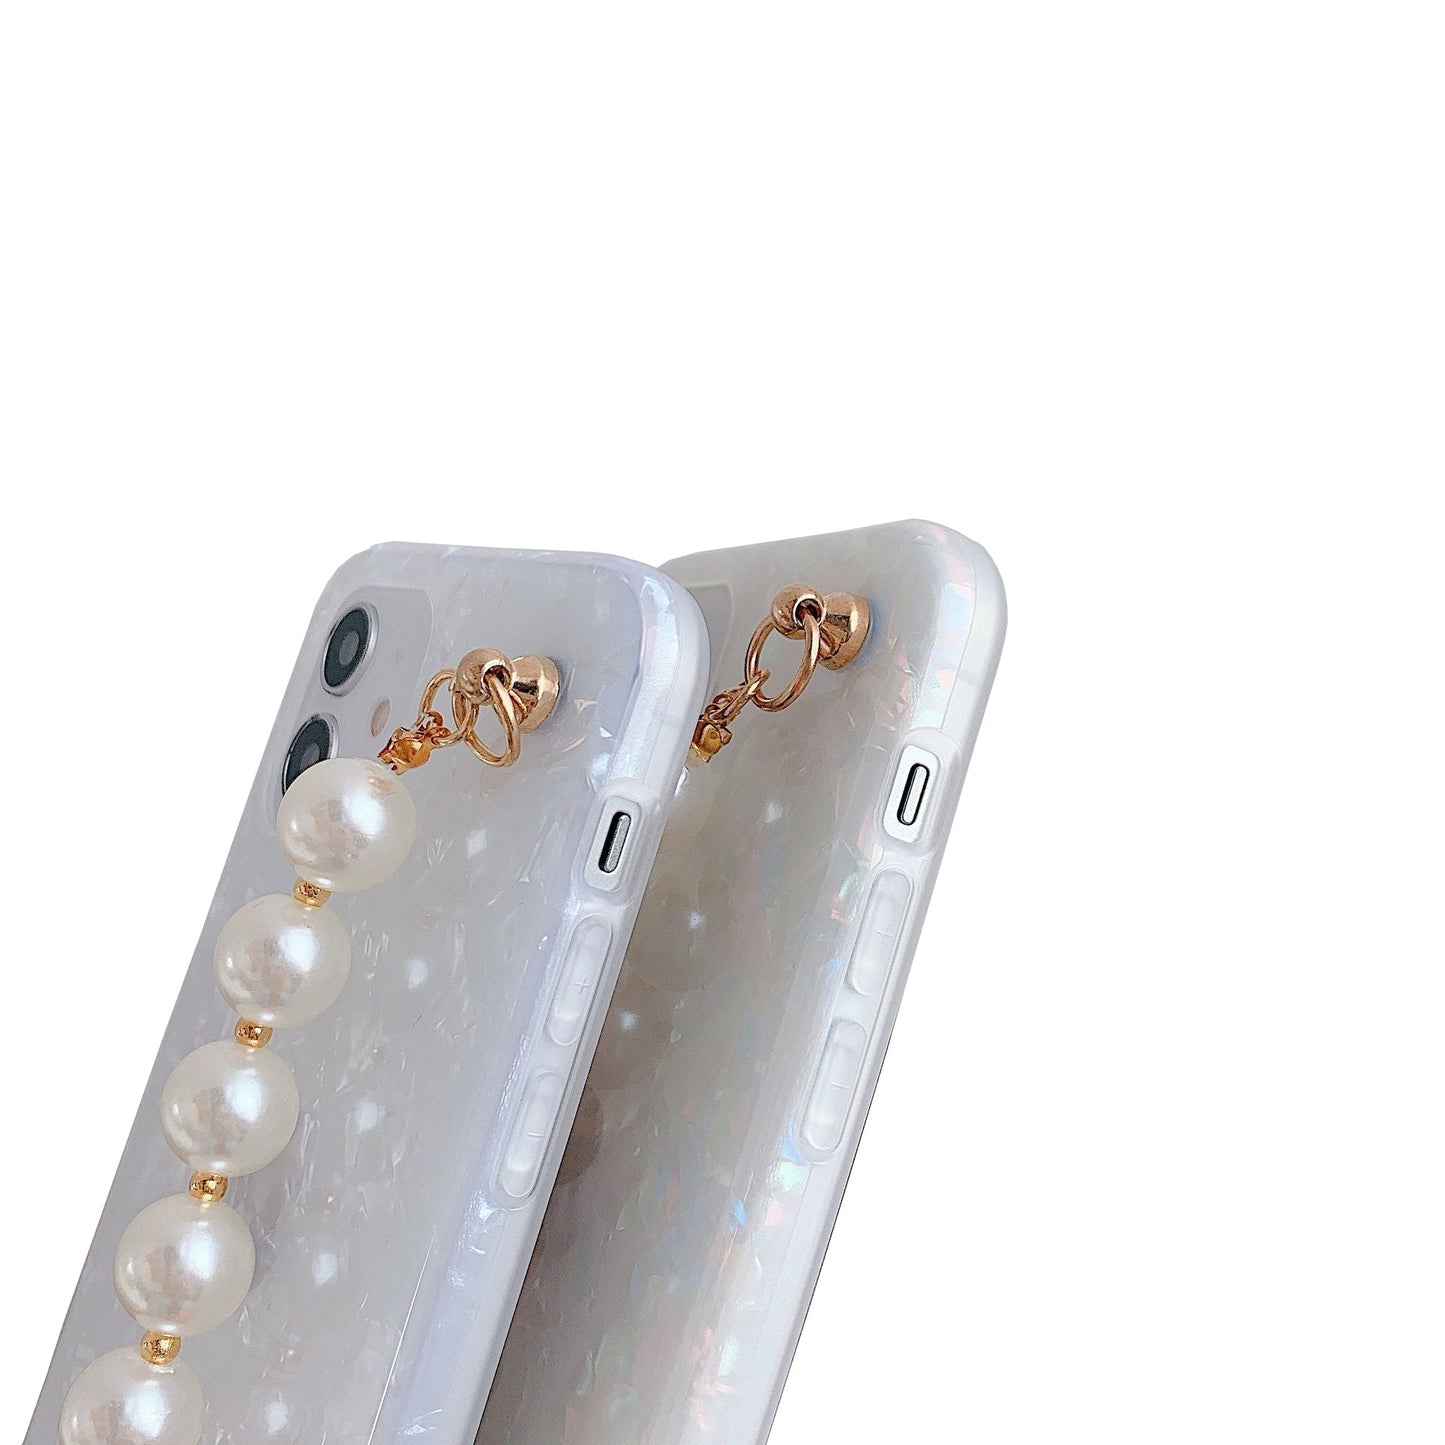 Premium iPhone 13 Case : White Pearl Holder